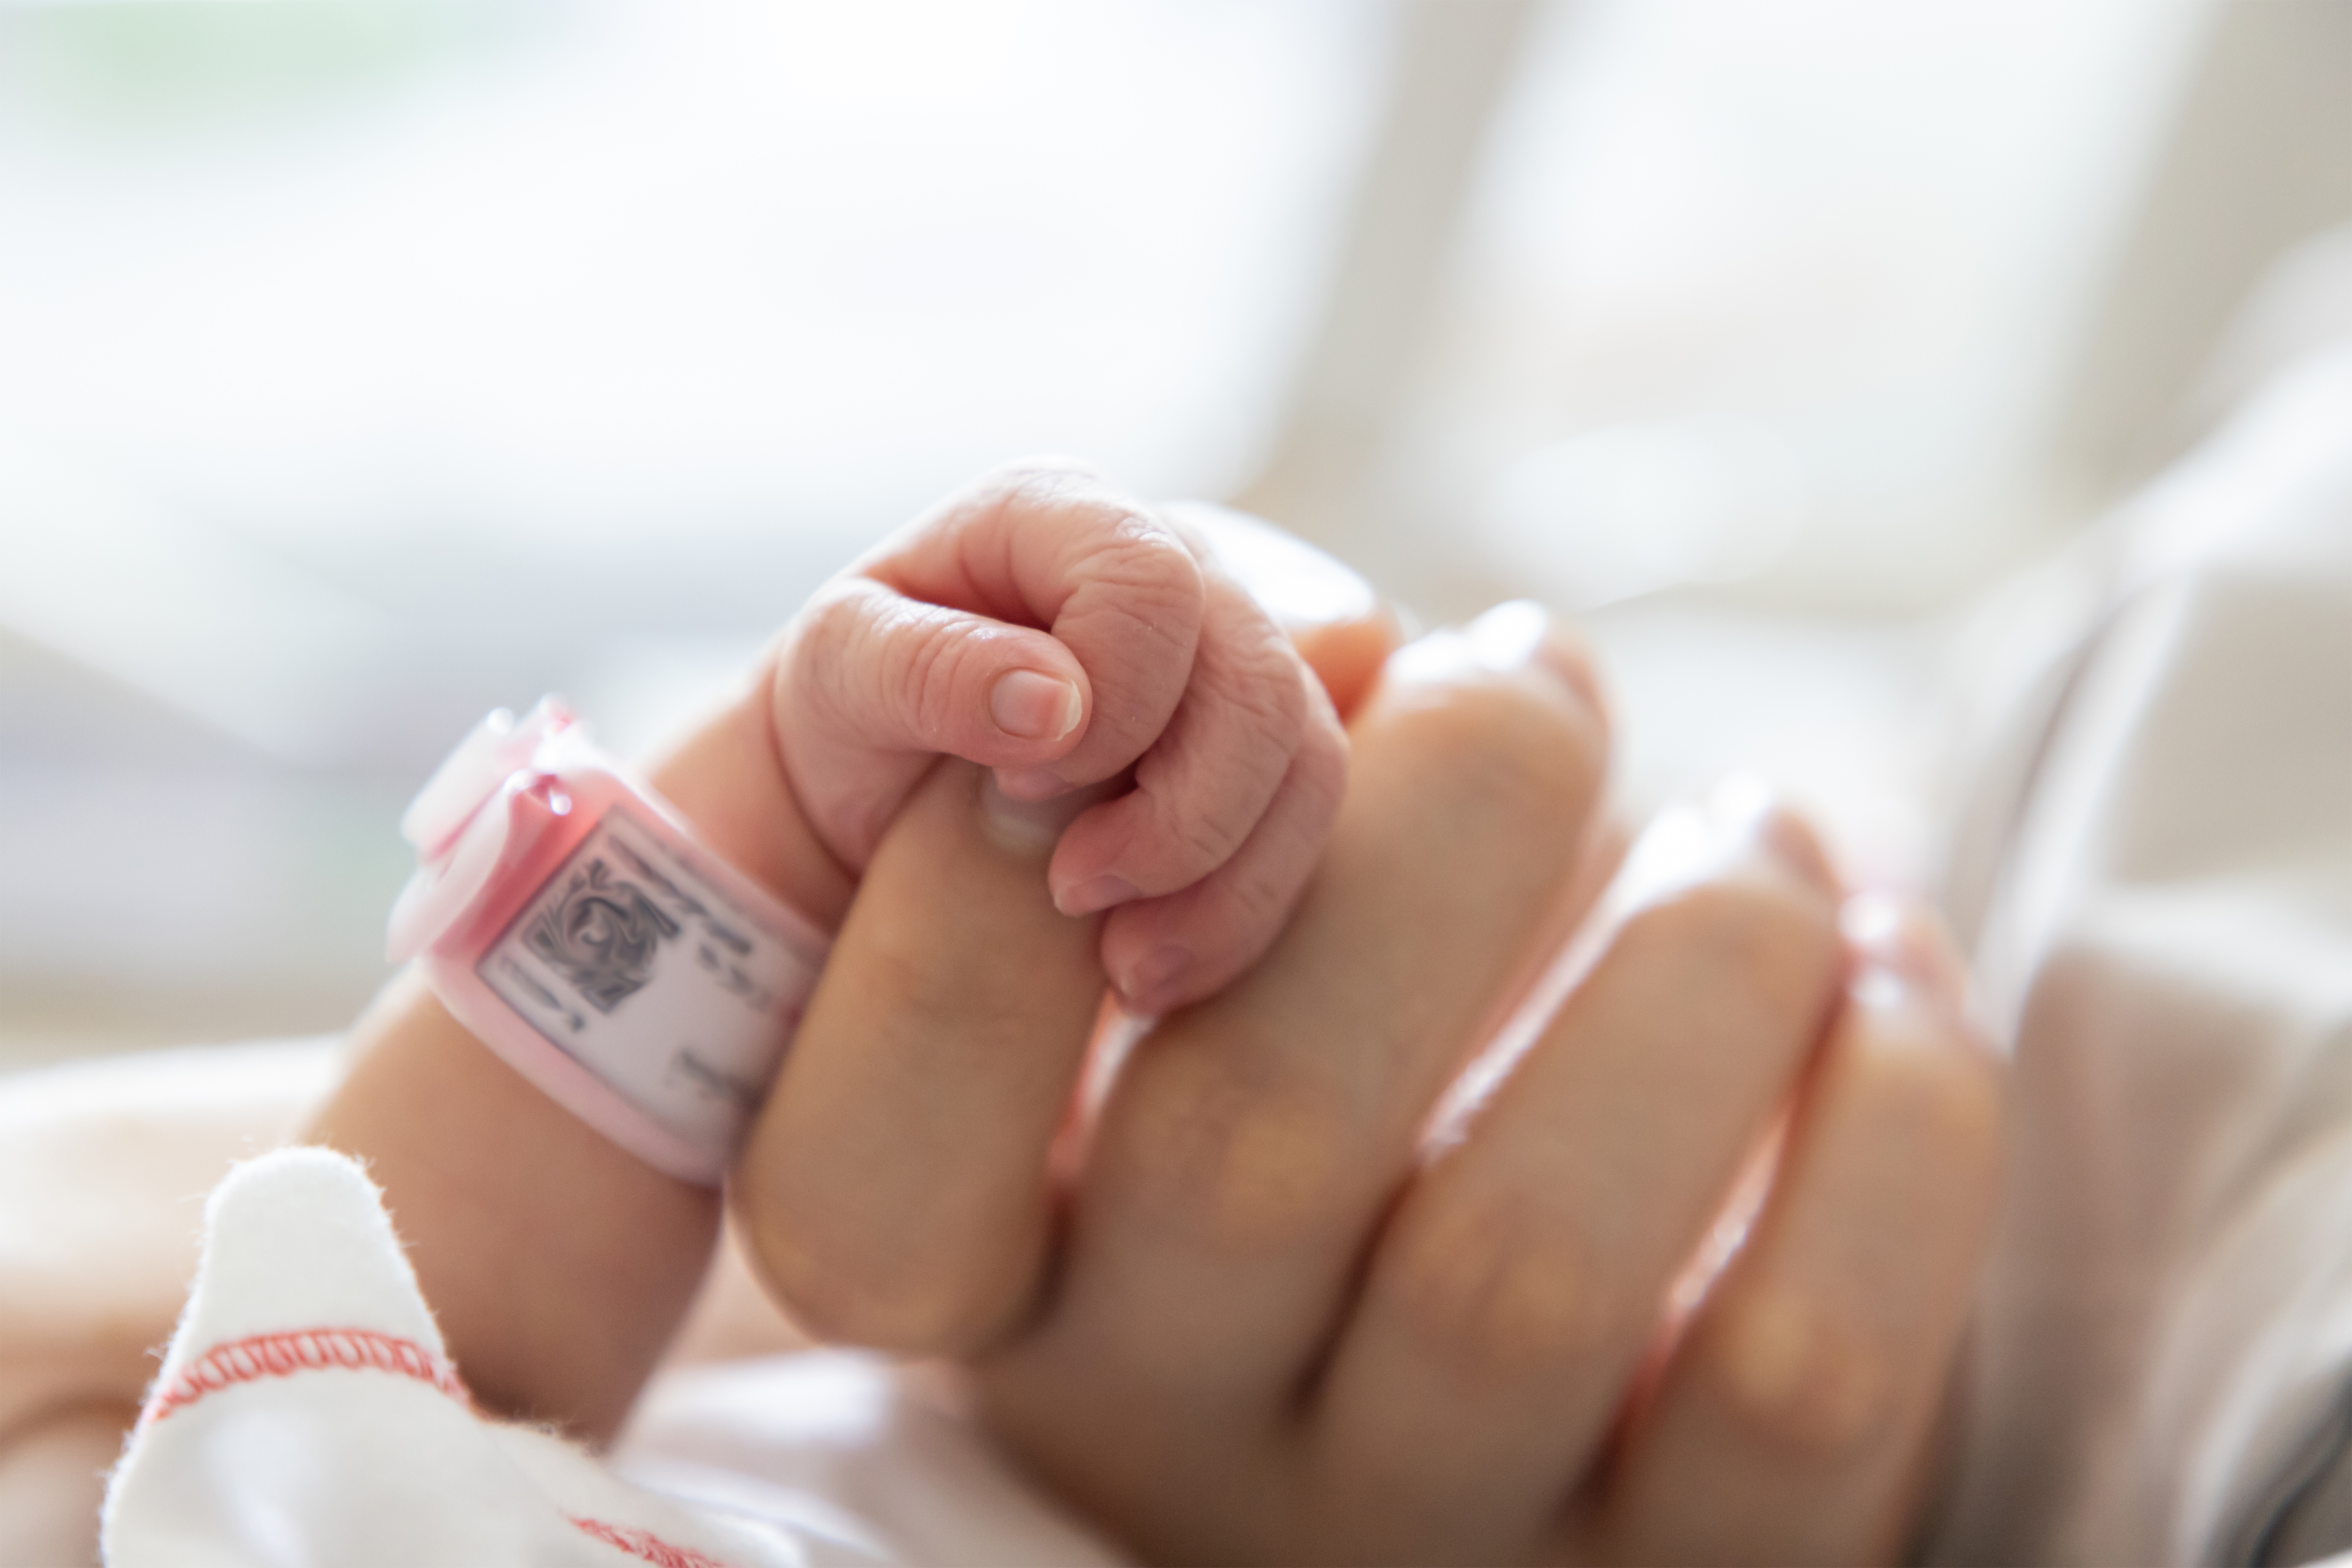 La mano de un recién nacido agarrando los dedos de su madre | Foto: Shutterstock